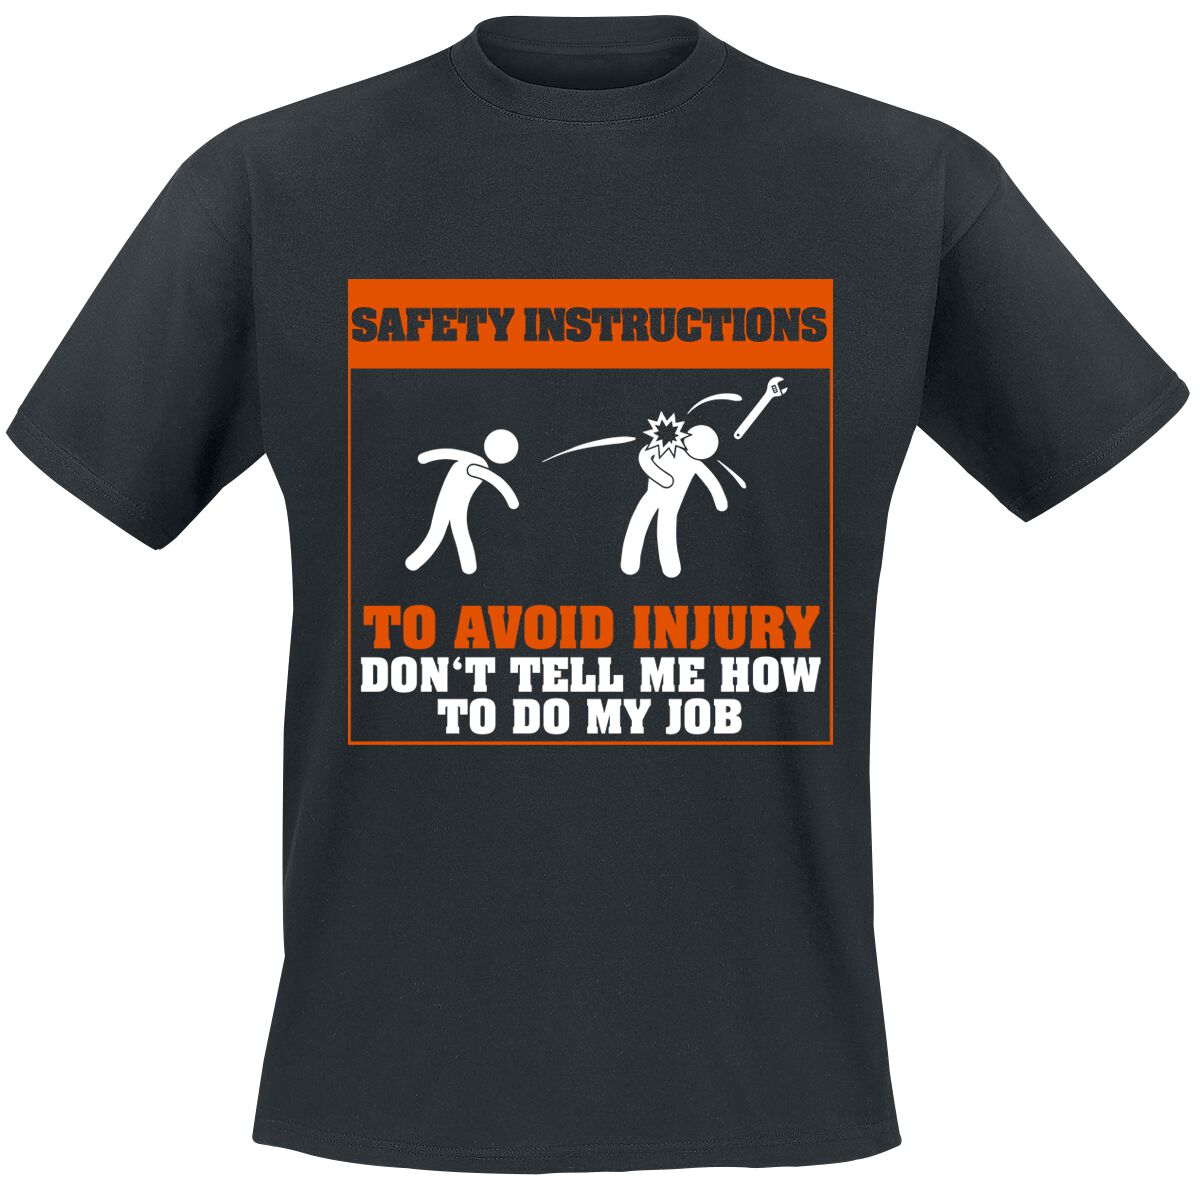 Beruf & Karriere Safety Instructions T-Shirt schwarz in S